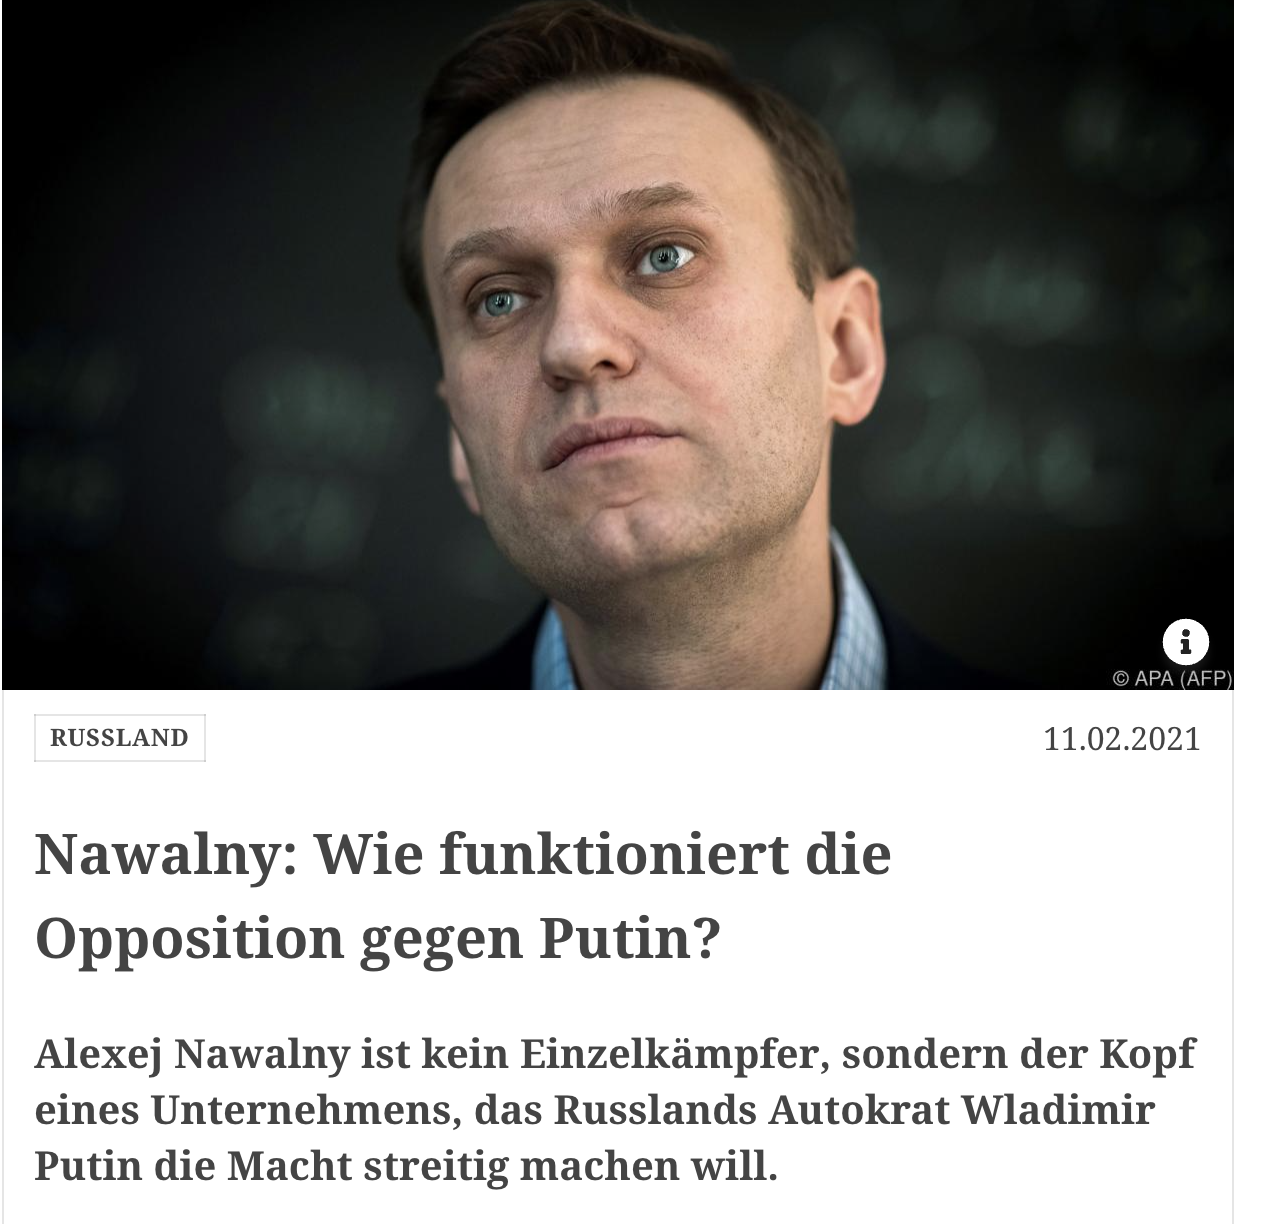 Operation Nawalny